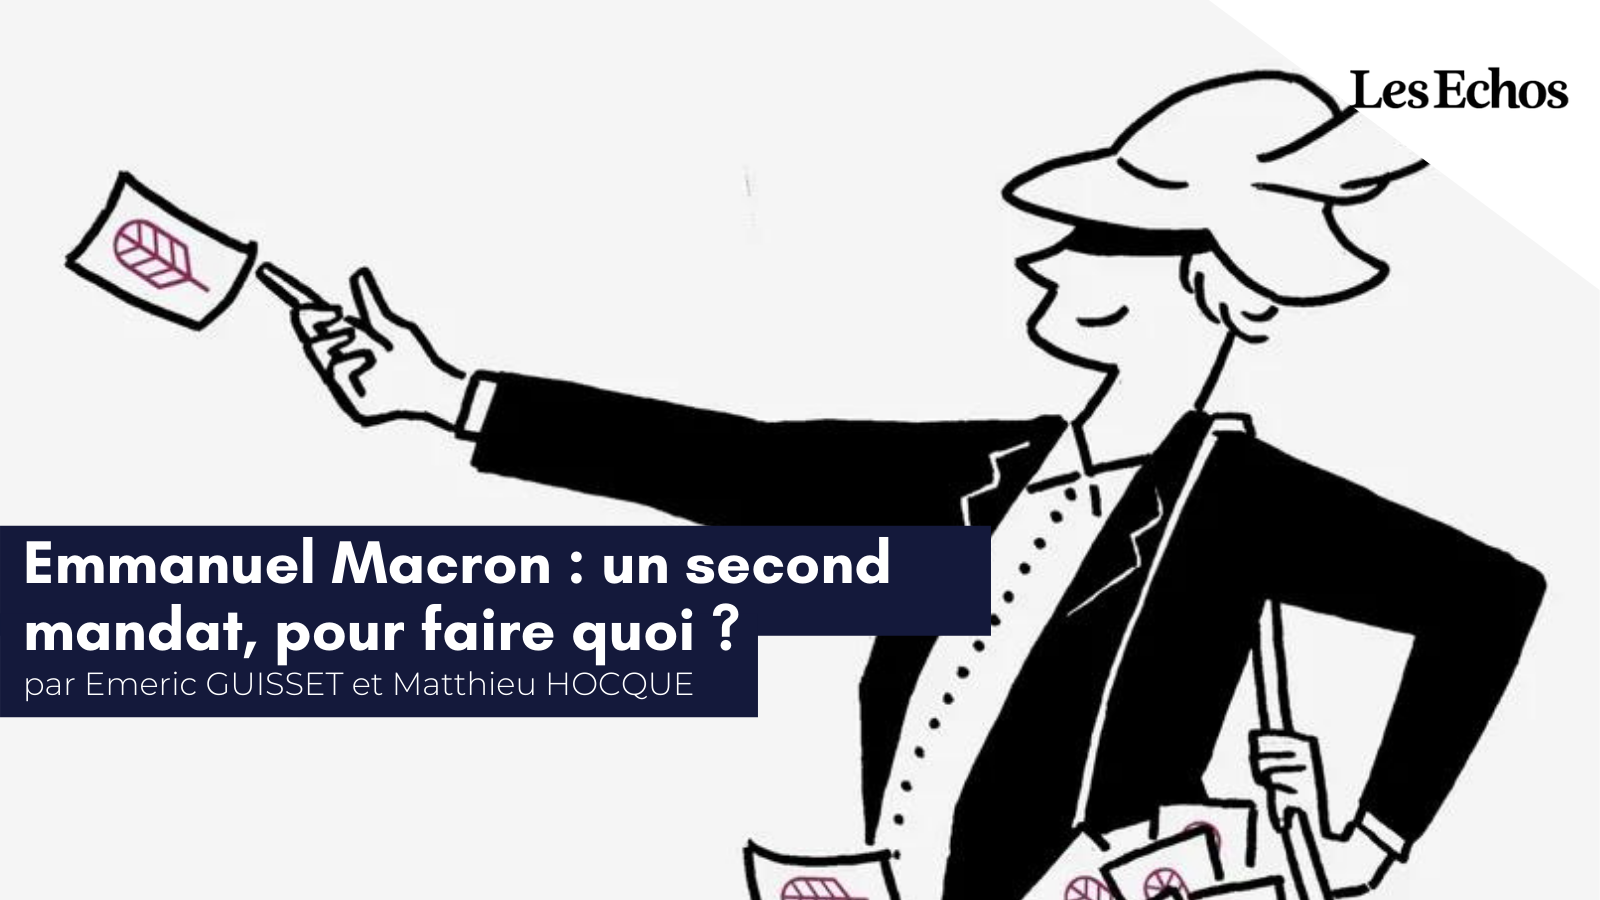 Emmanuel Macron un second mandat, pour faire quoi (1)